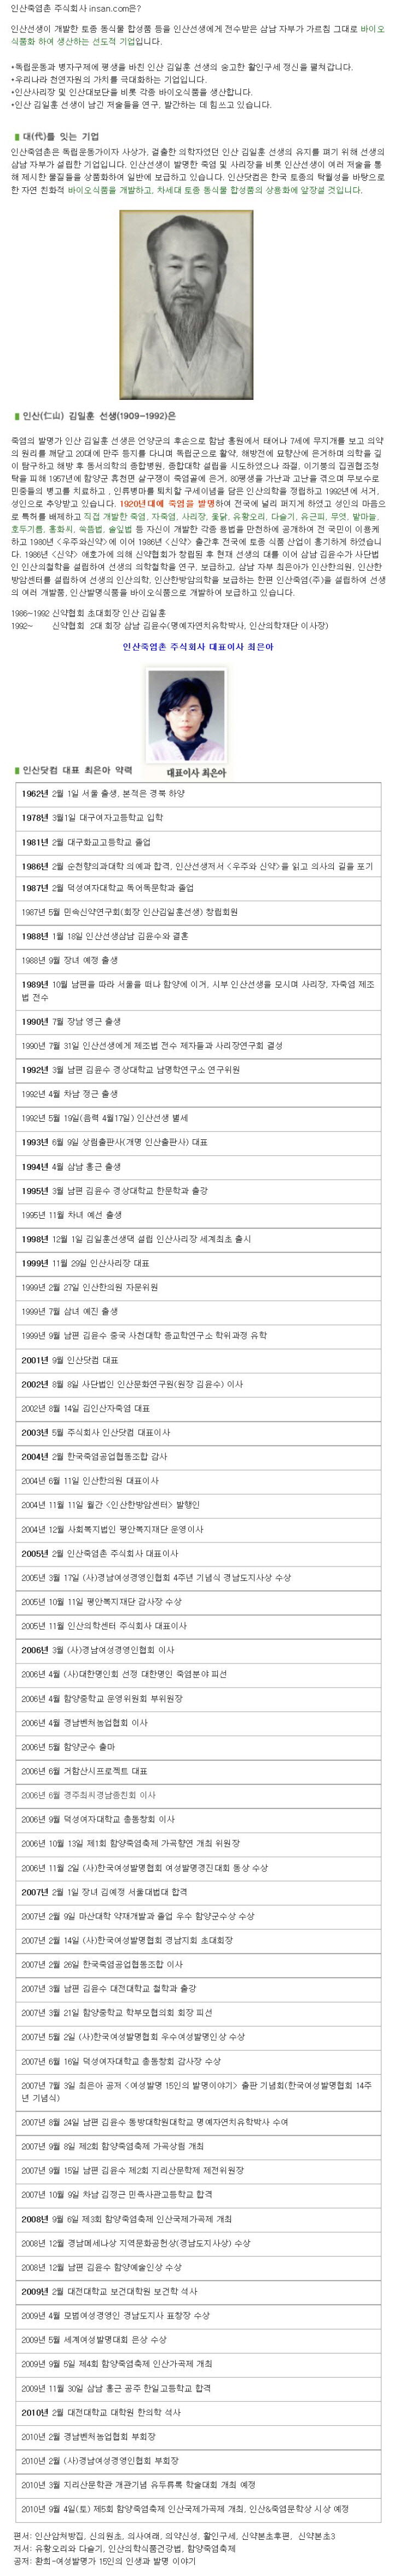 꾸미기4소개말.JPG